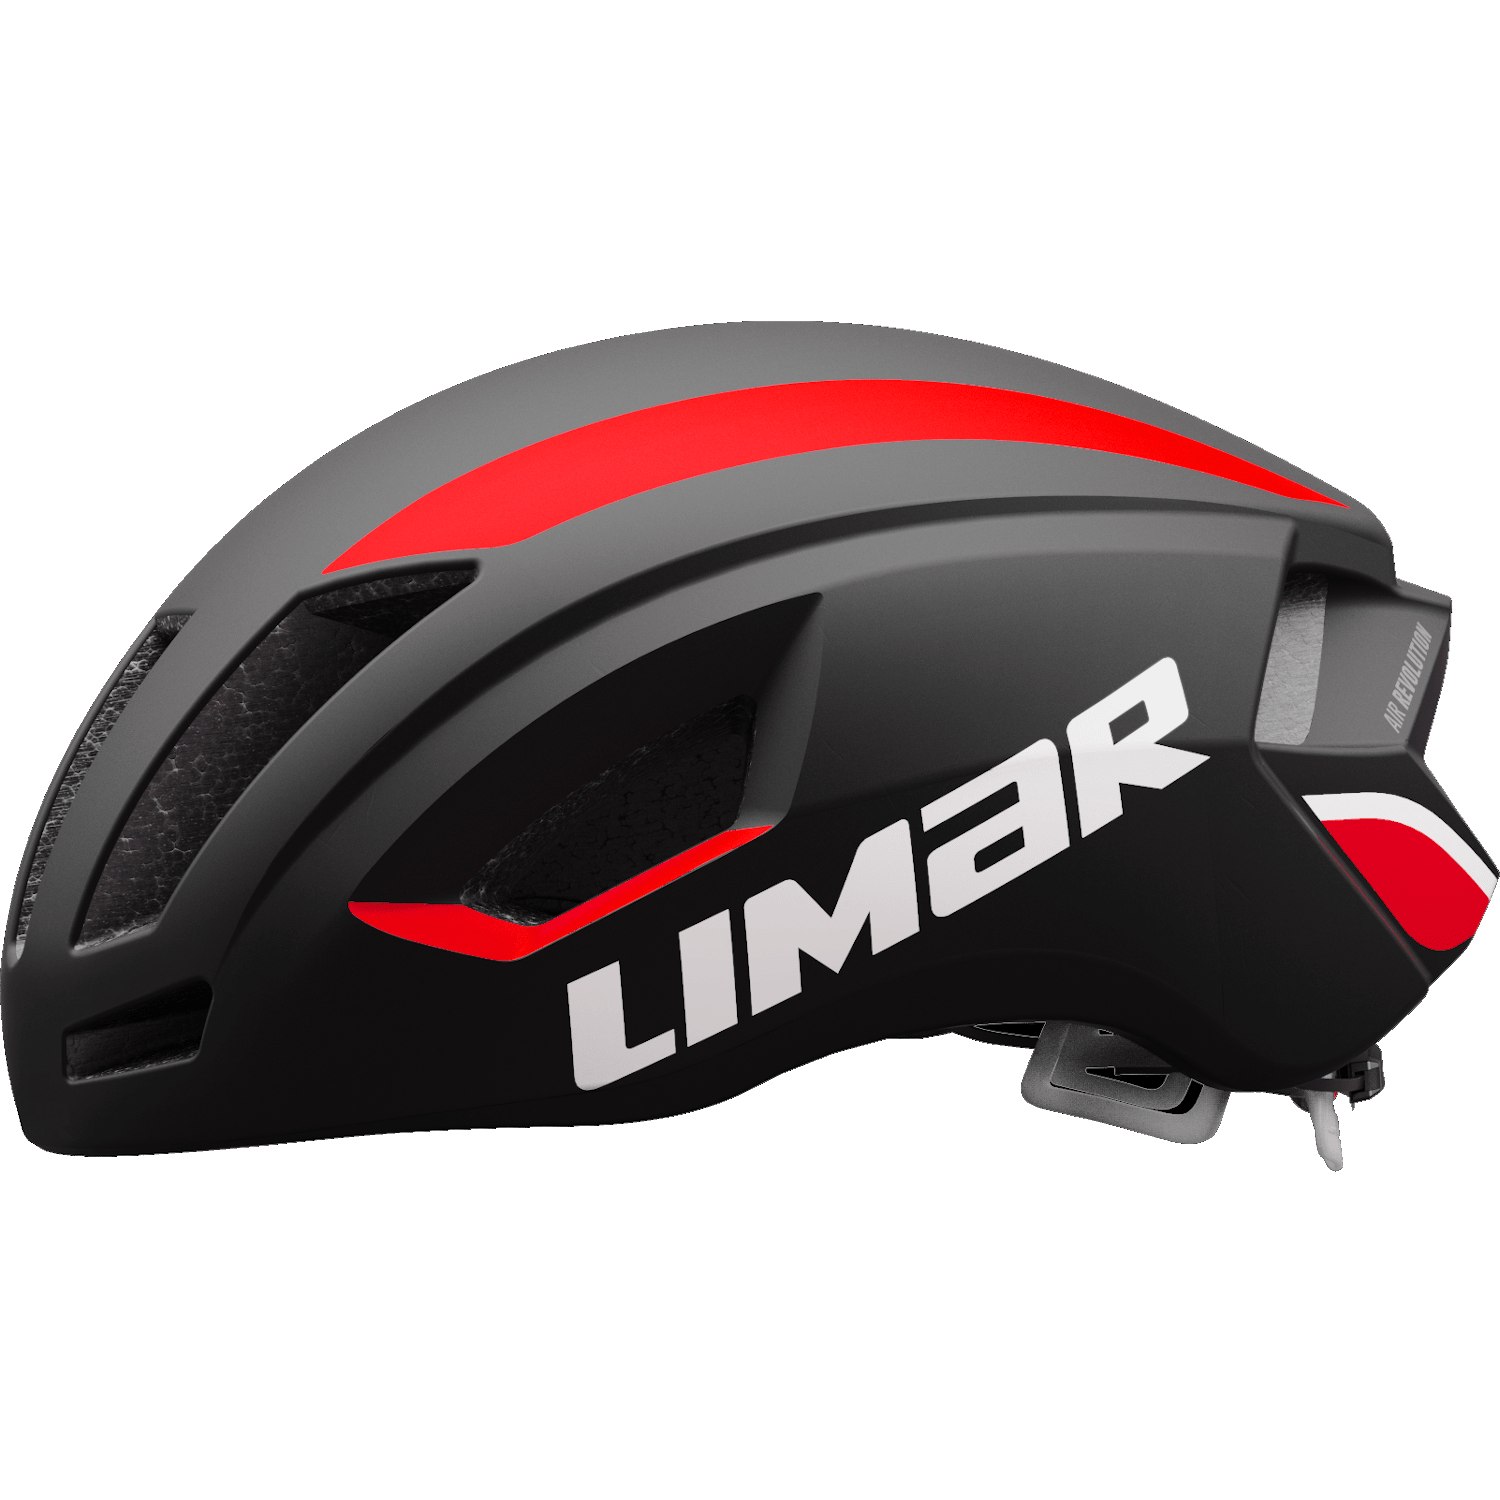 Bild von Limar Air Speed Helm - Matt Black Red 2022